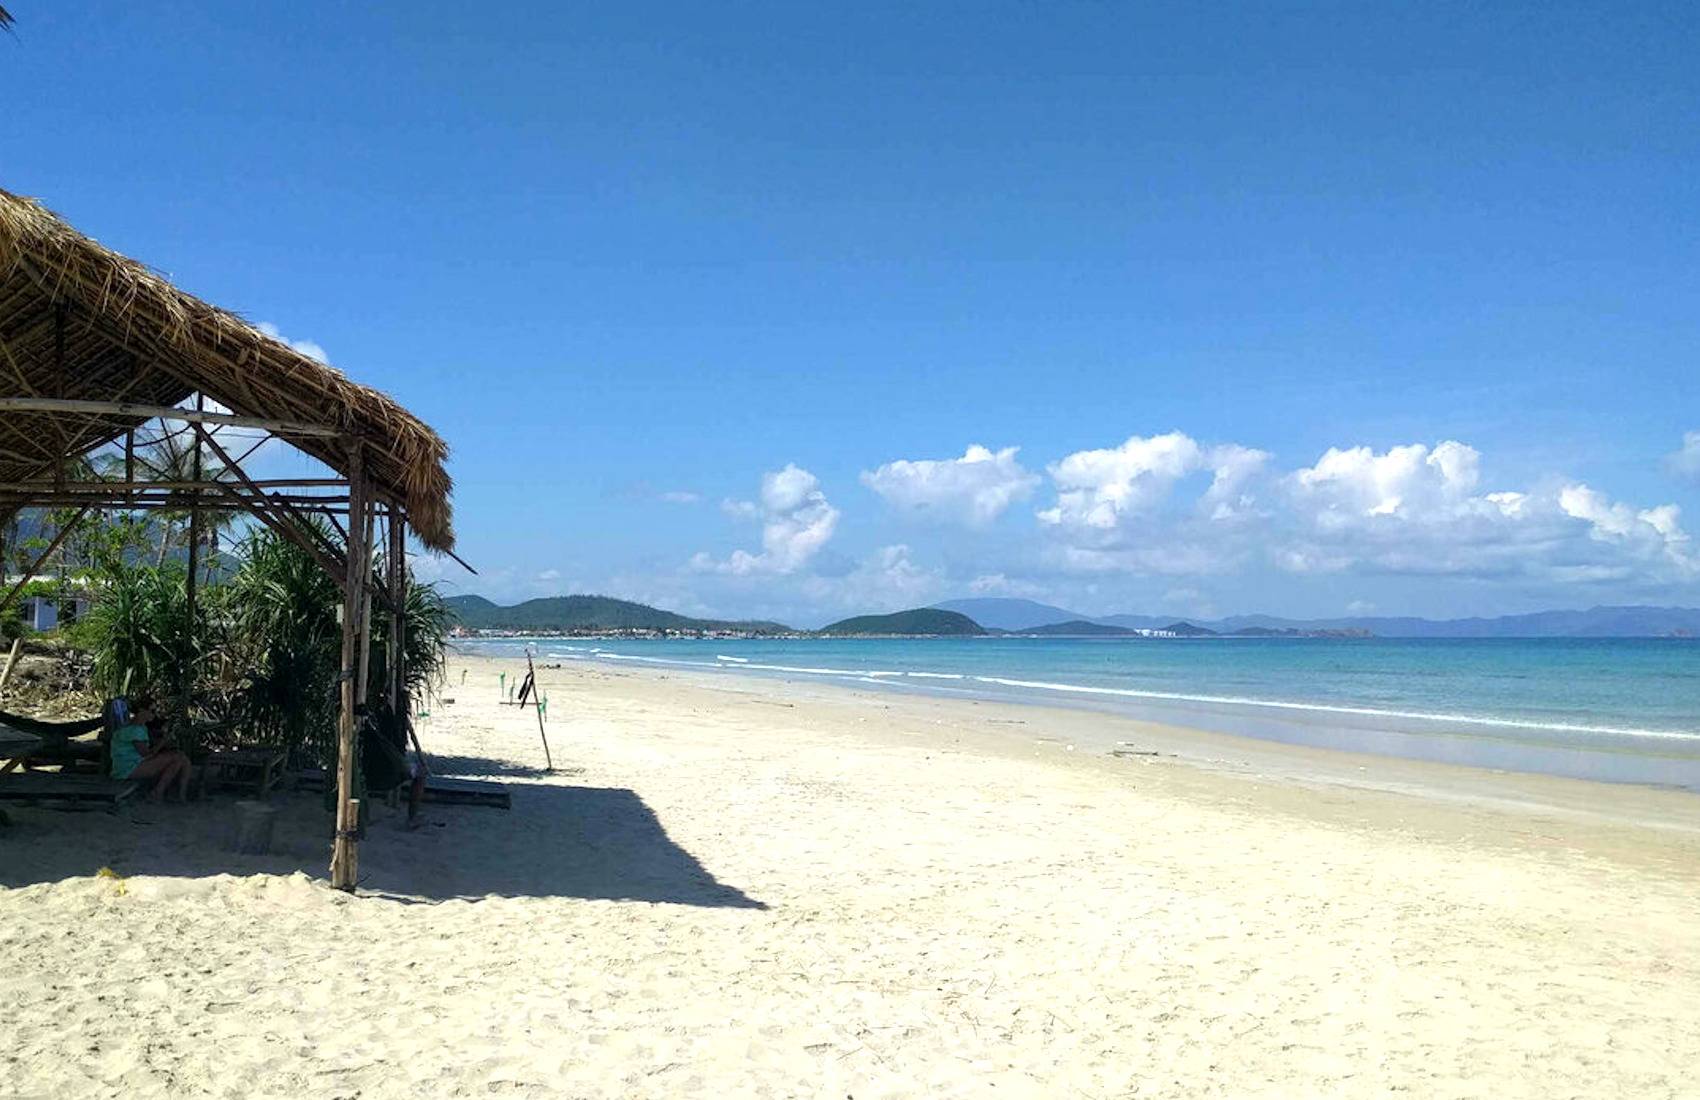 Где лучшие пляжи для отдыха в нячанге, вьетнам, и как к ним добраться? фото на travel picture